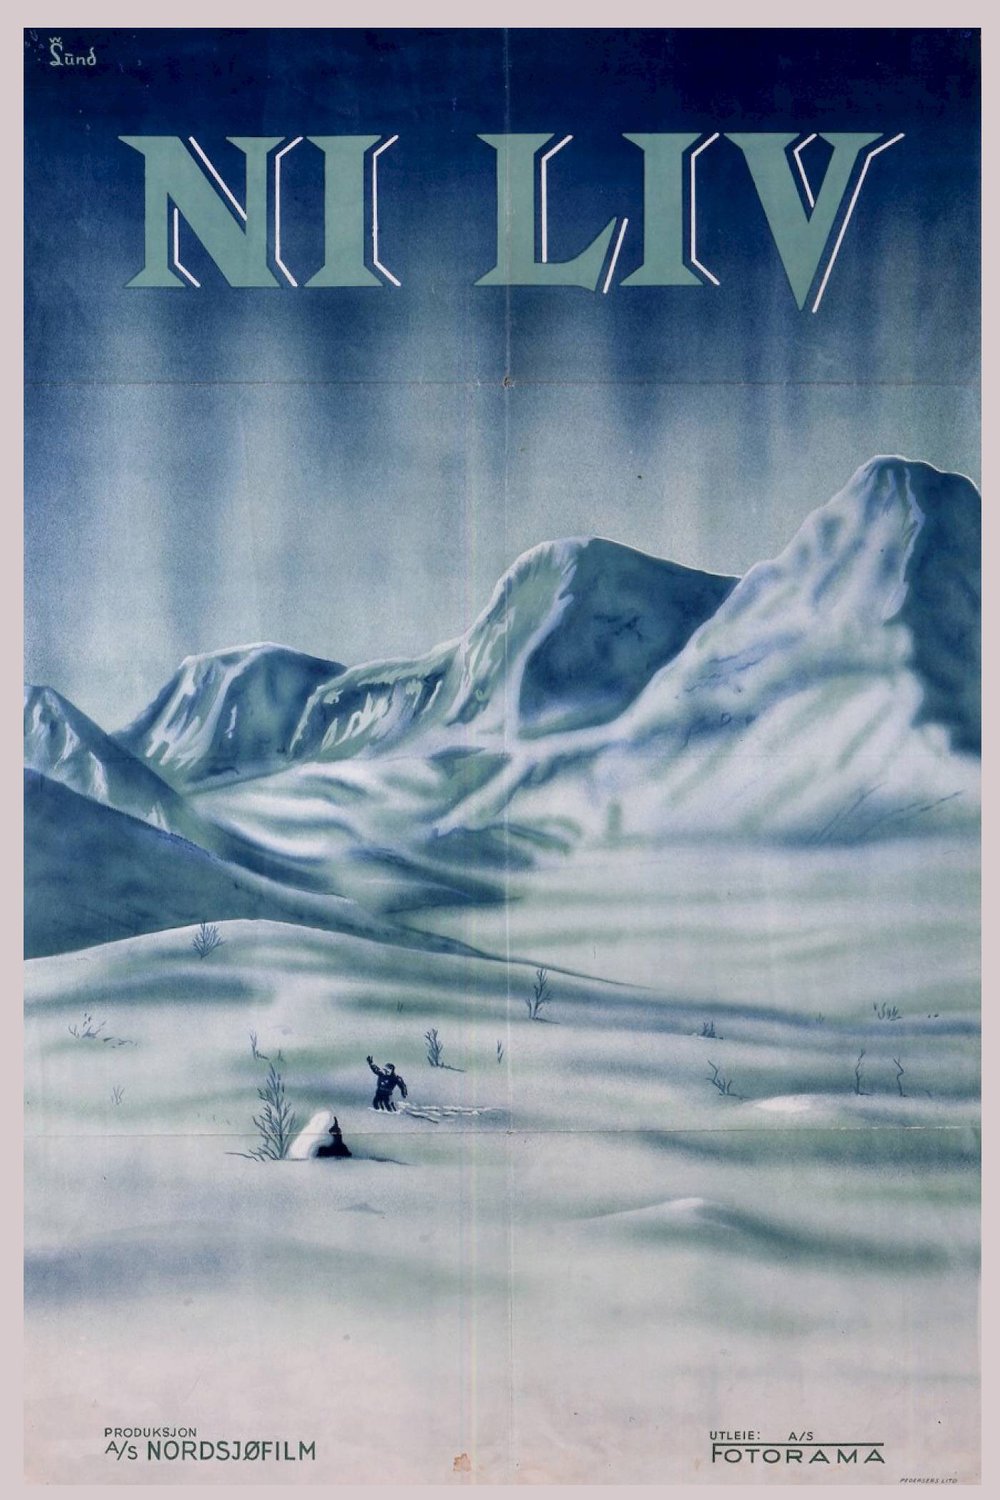 L'affiche originale du film Ni liv en norvégien